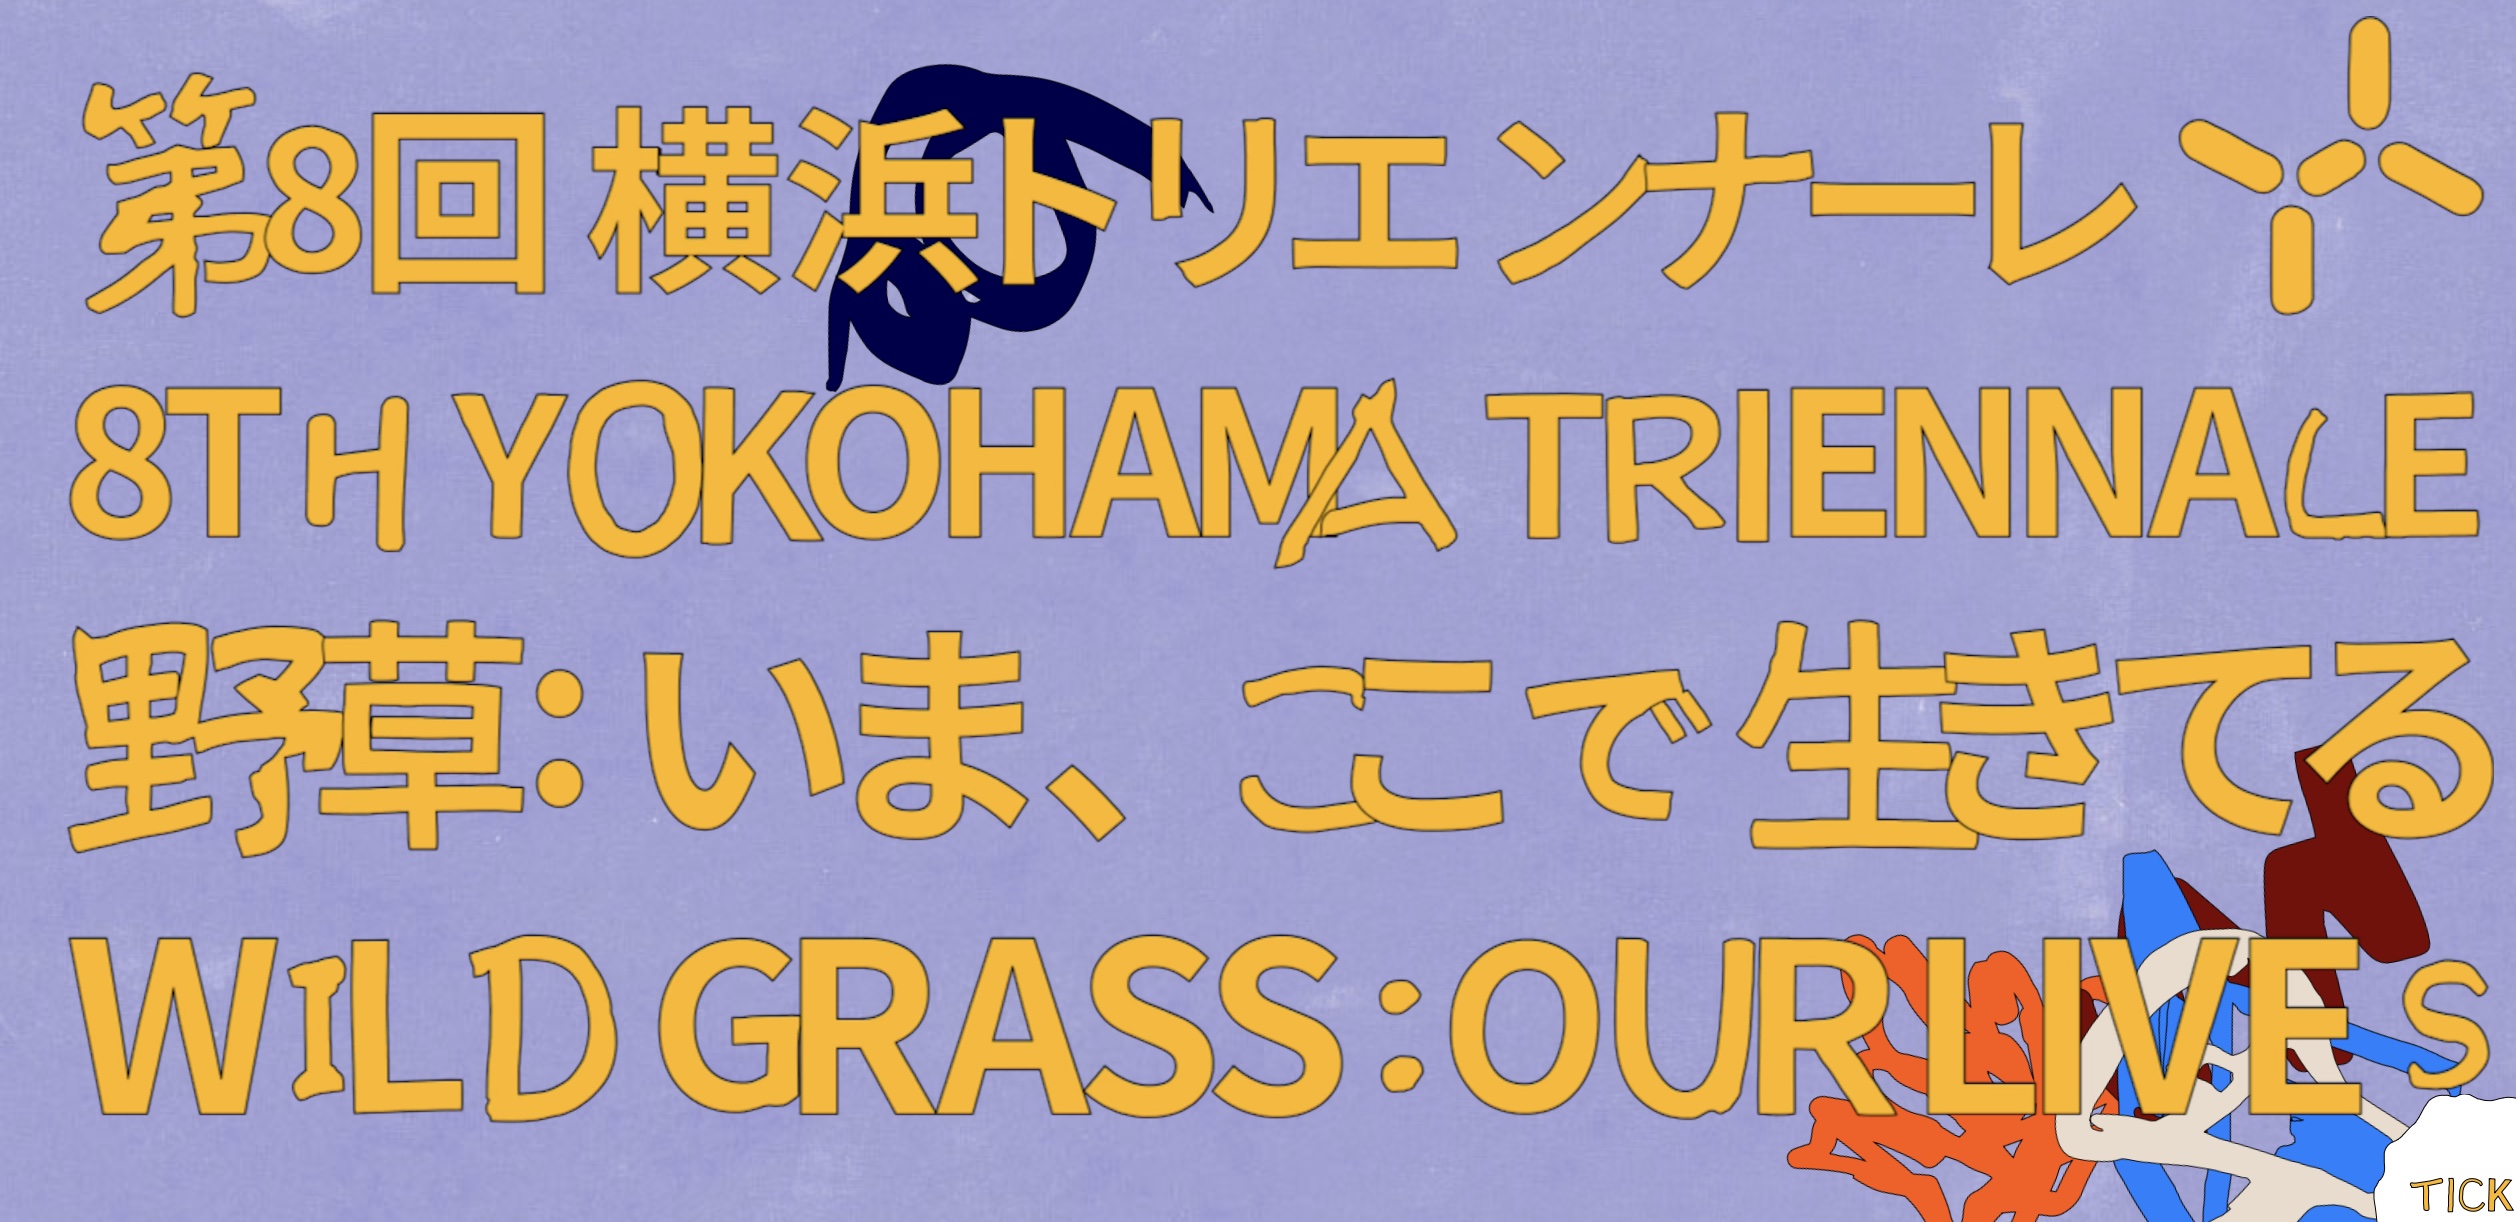 8th Yokohama Triennale Wild Grass: Our Lives